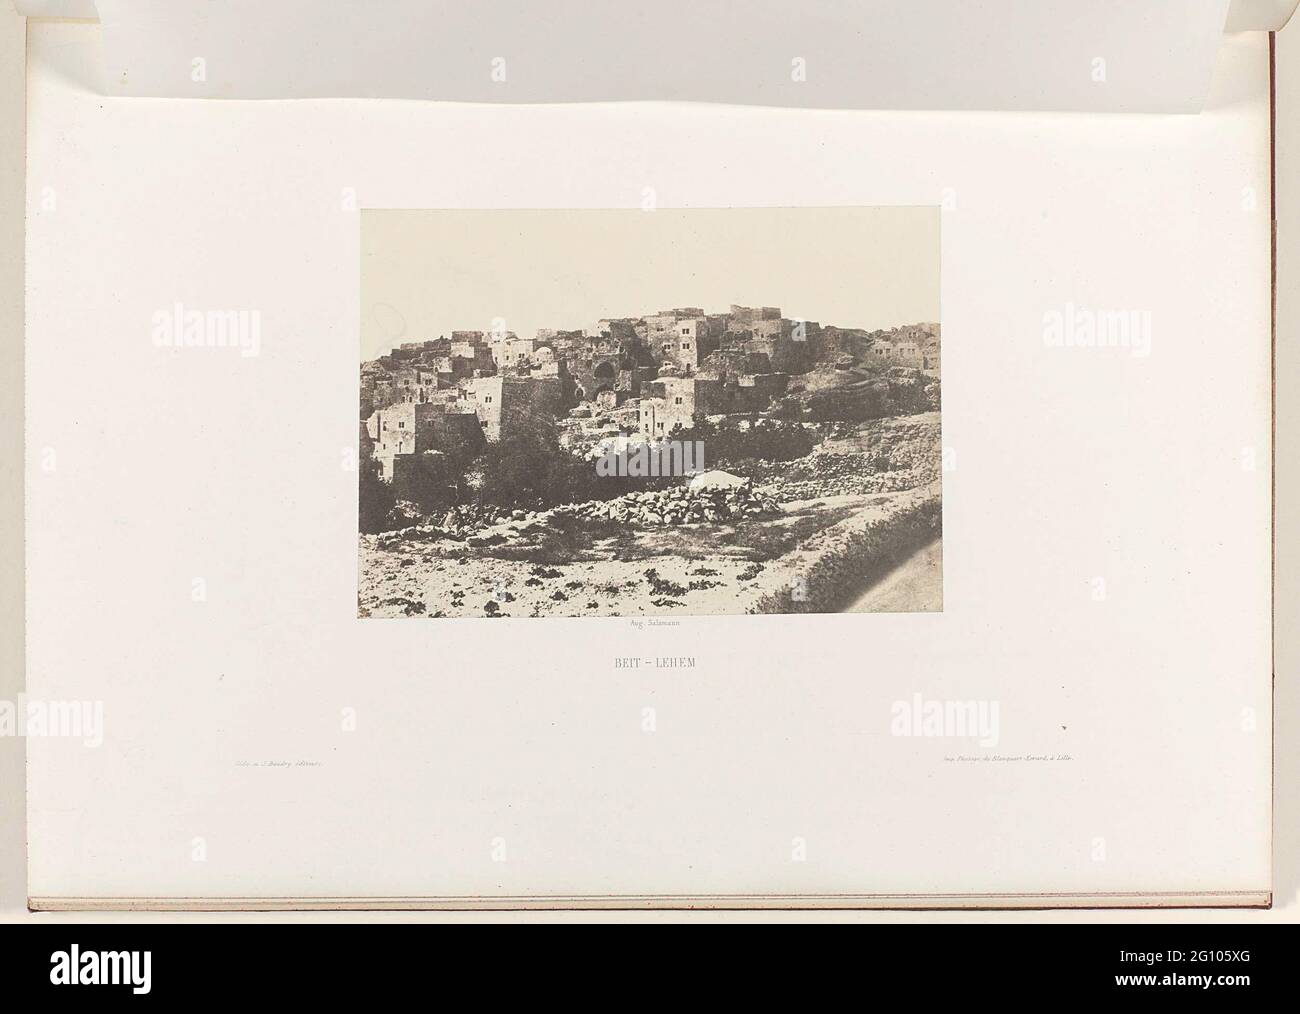 Gezicht op Betlehem (Beit-Lehem); Jerusalem. Study and photographic reproduction of the monuments of the holy city. Beit-lehem Stock Photo